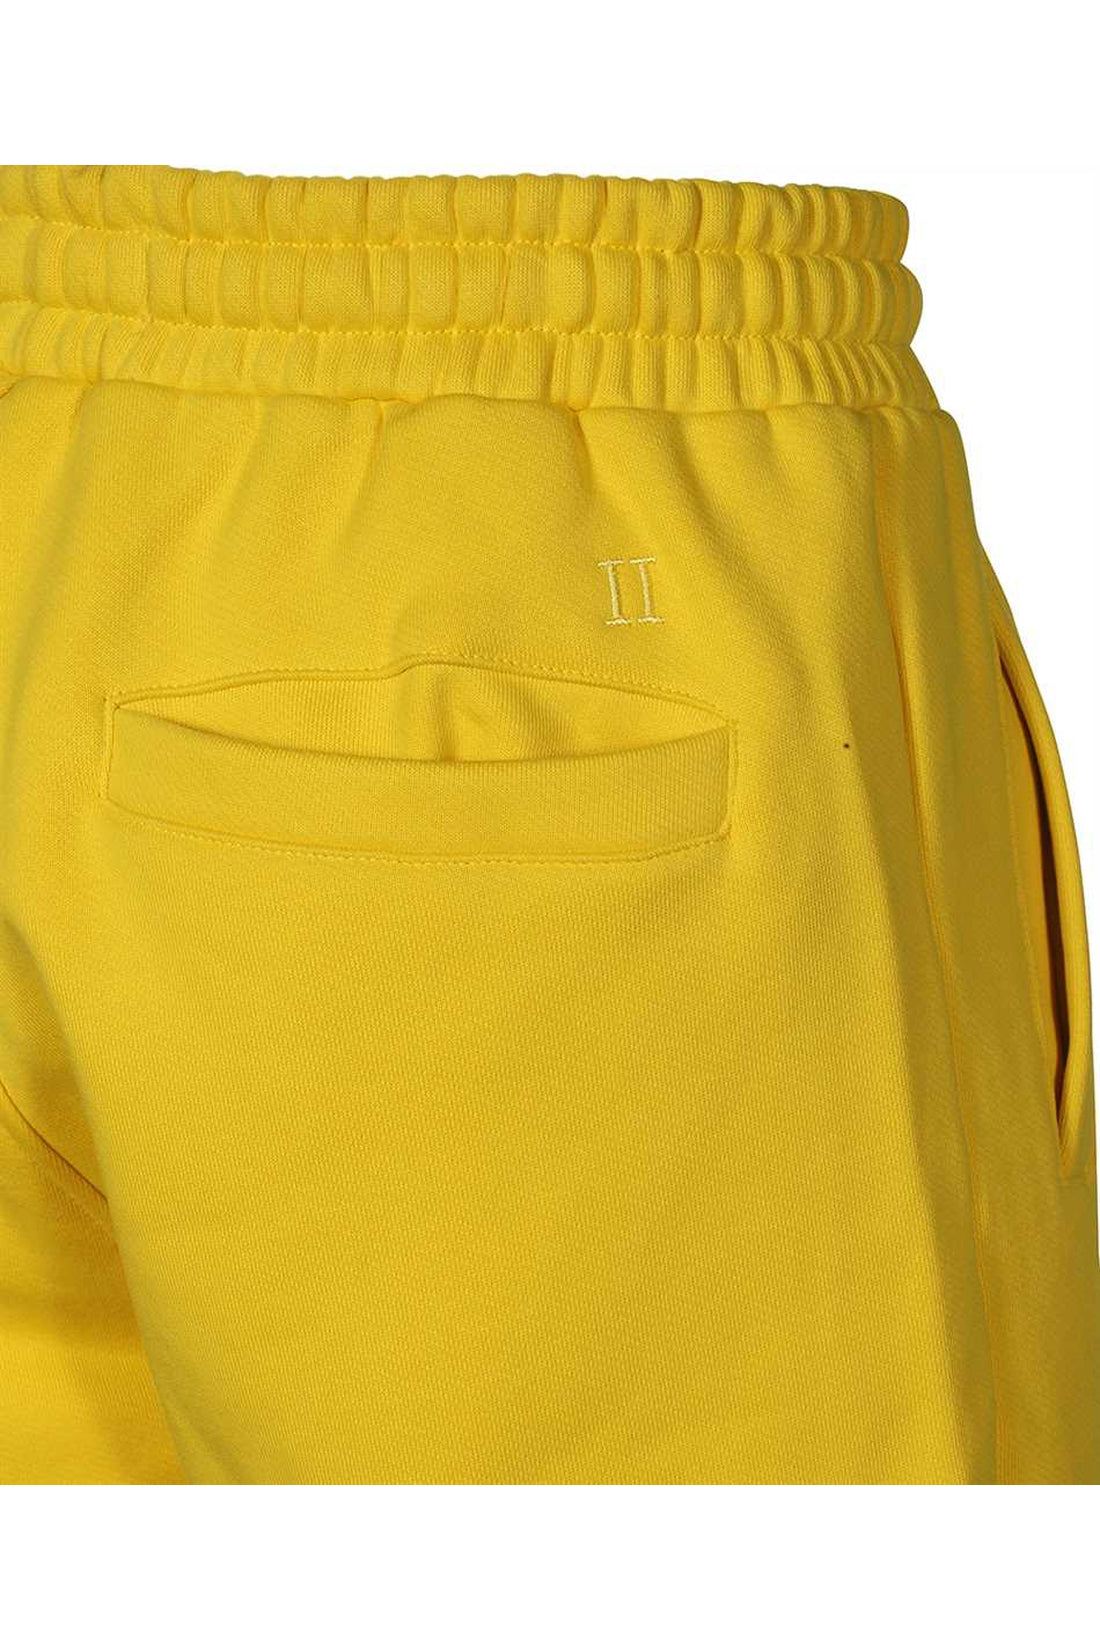 Les Deux-OUTLET-SALE-Cotton bermuda shorts-ARCHIVIST